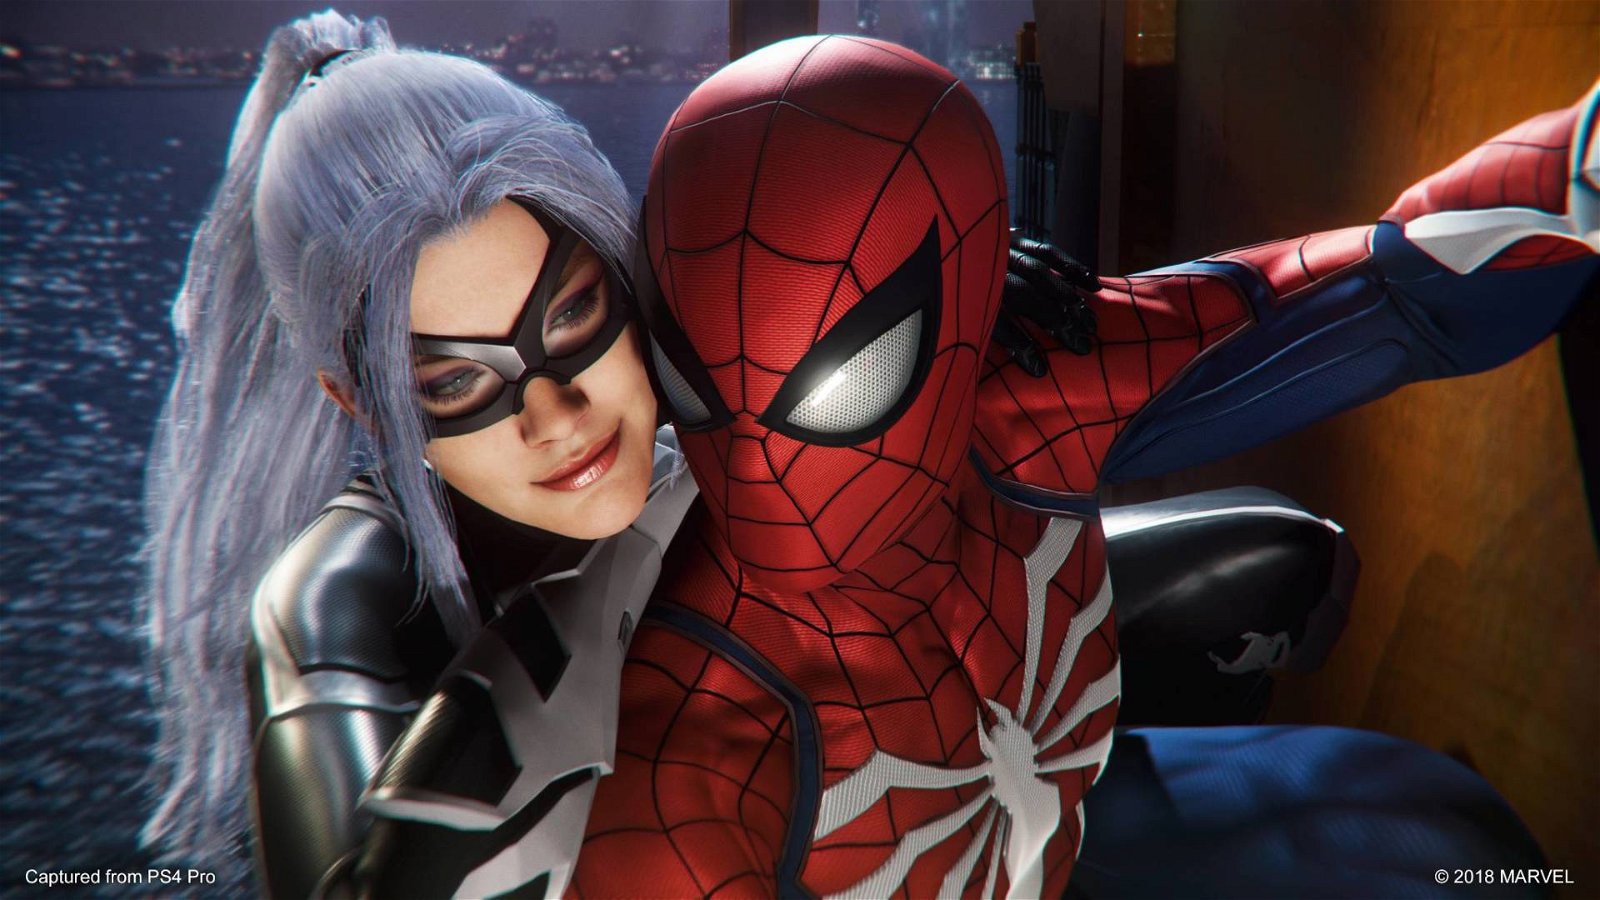 Immagine di Marvel's Spider-Man: La Rapina, recensione del primo DLC dell'esclusiva PlayStation 4